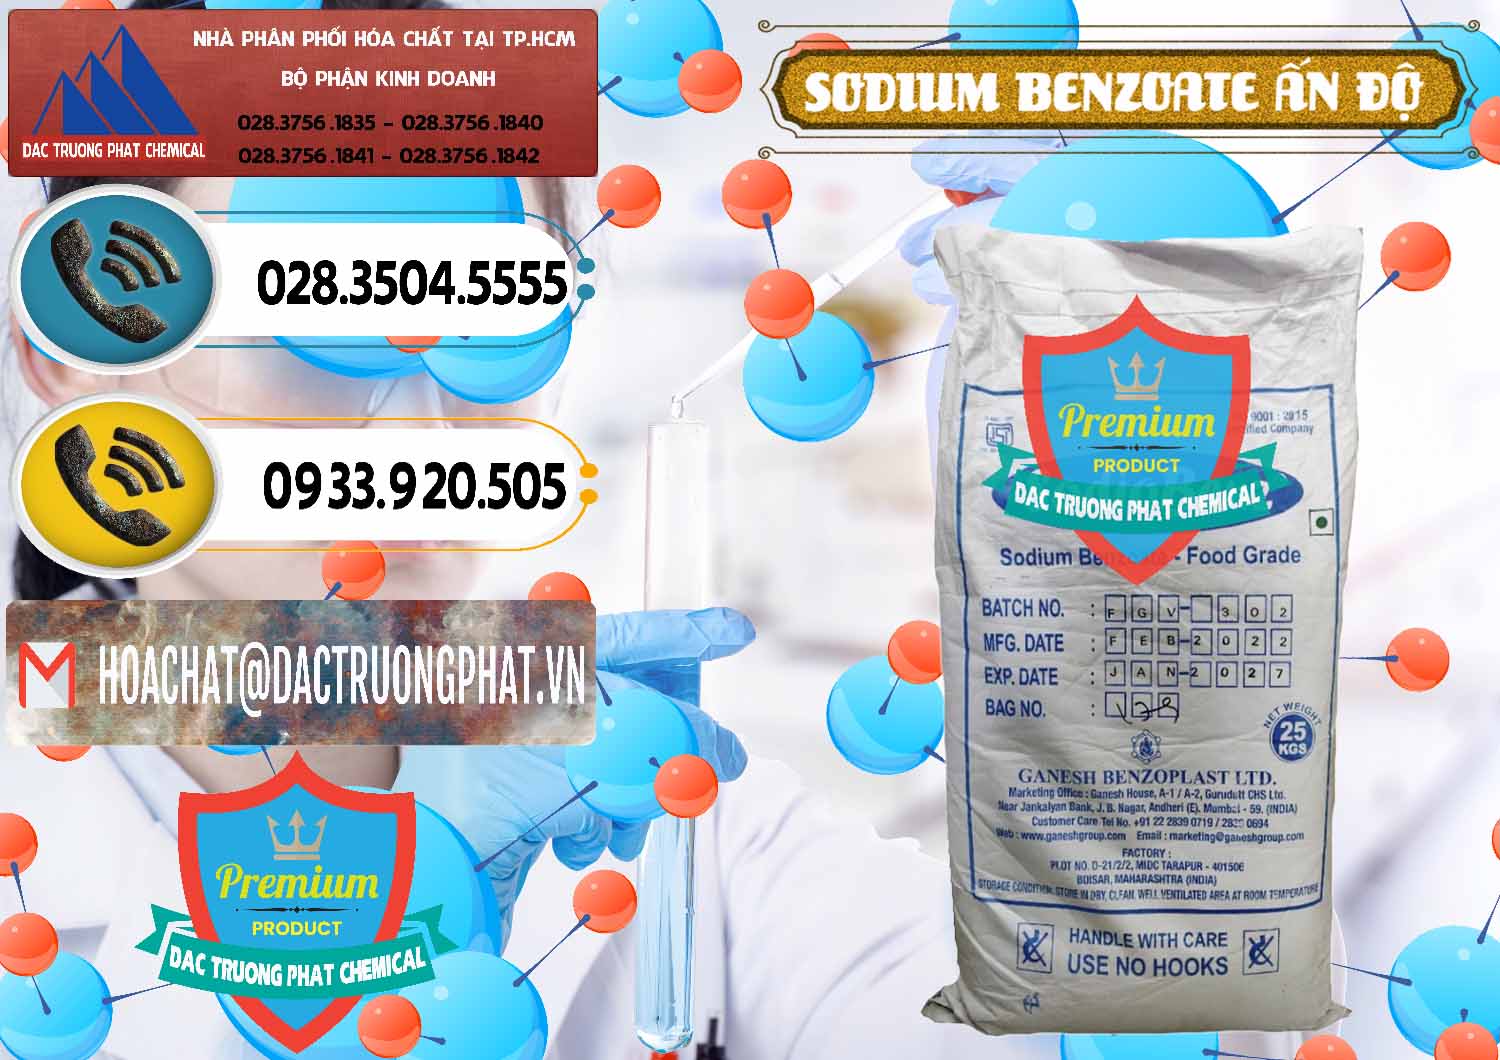 Phân phối & bán Sodium Benzoate - Mốc Bột Ấn Độ India - 0361 - Công ty chuyên bán - phân phối hóa chất tại TP.HCM - hoachatdetnhuom.vn